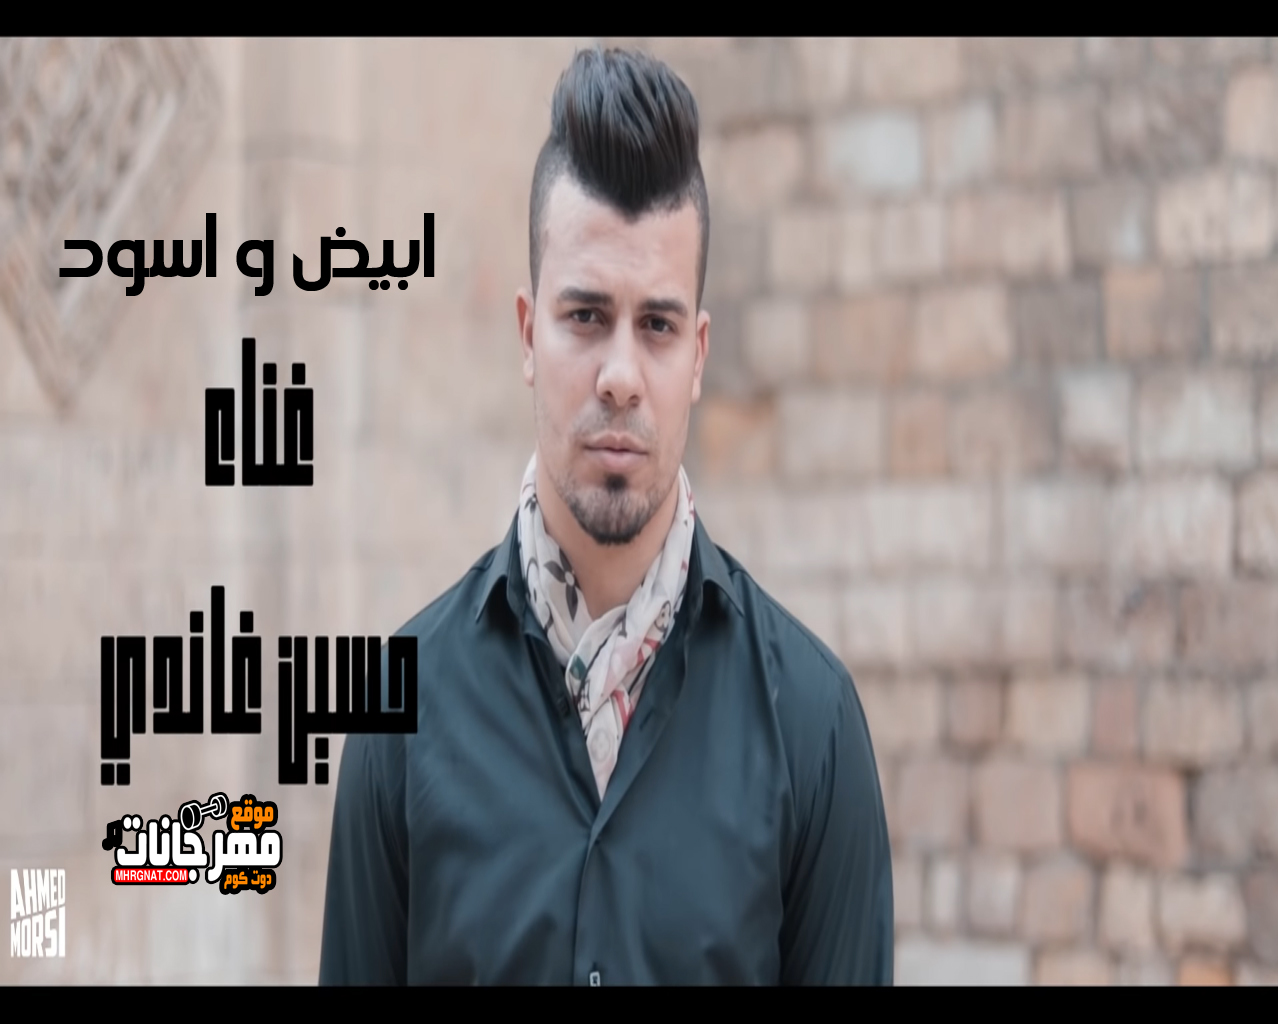 اغنيه ابيض و اسود غناء حسين غاندي توزيع بيدو ياسر كلمات هيثم عفيفي